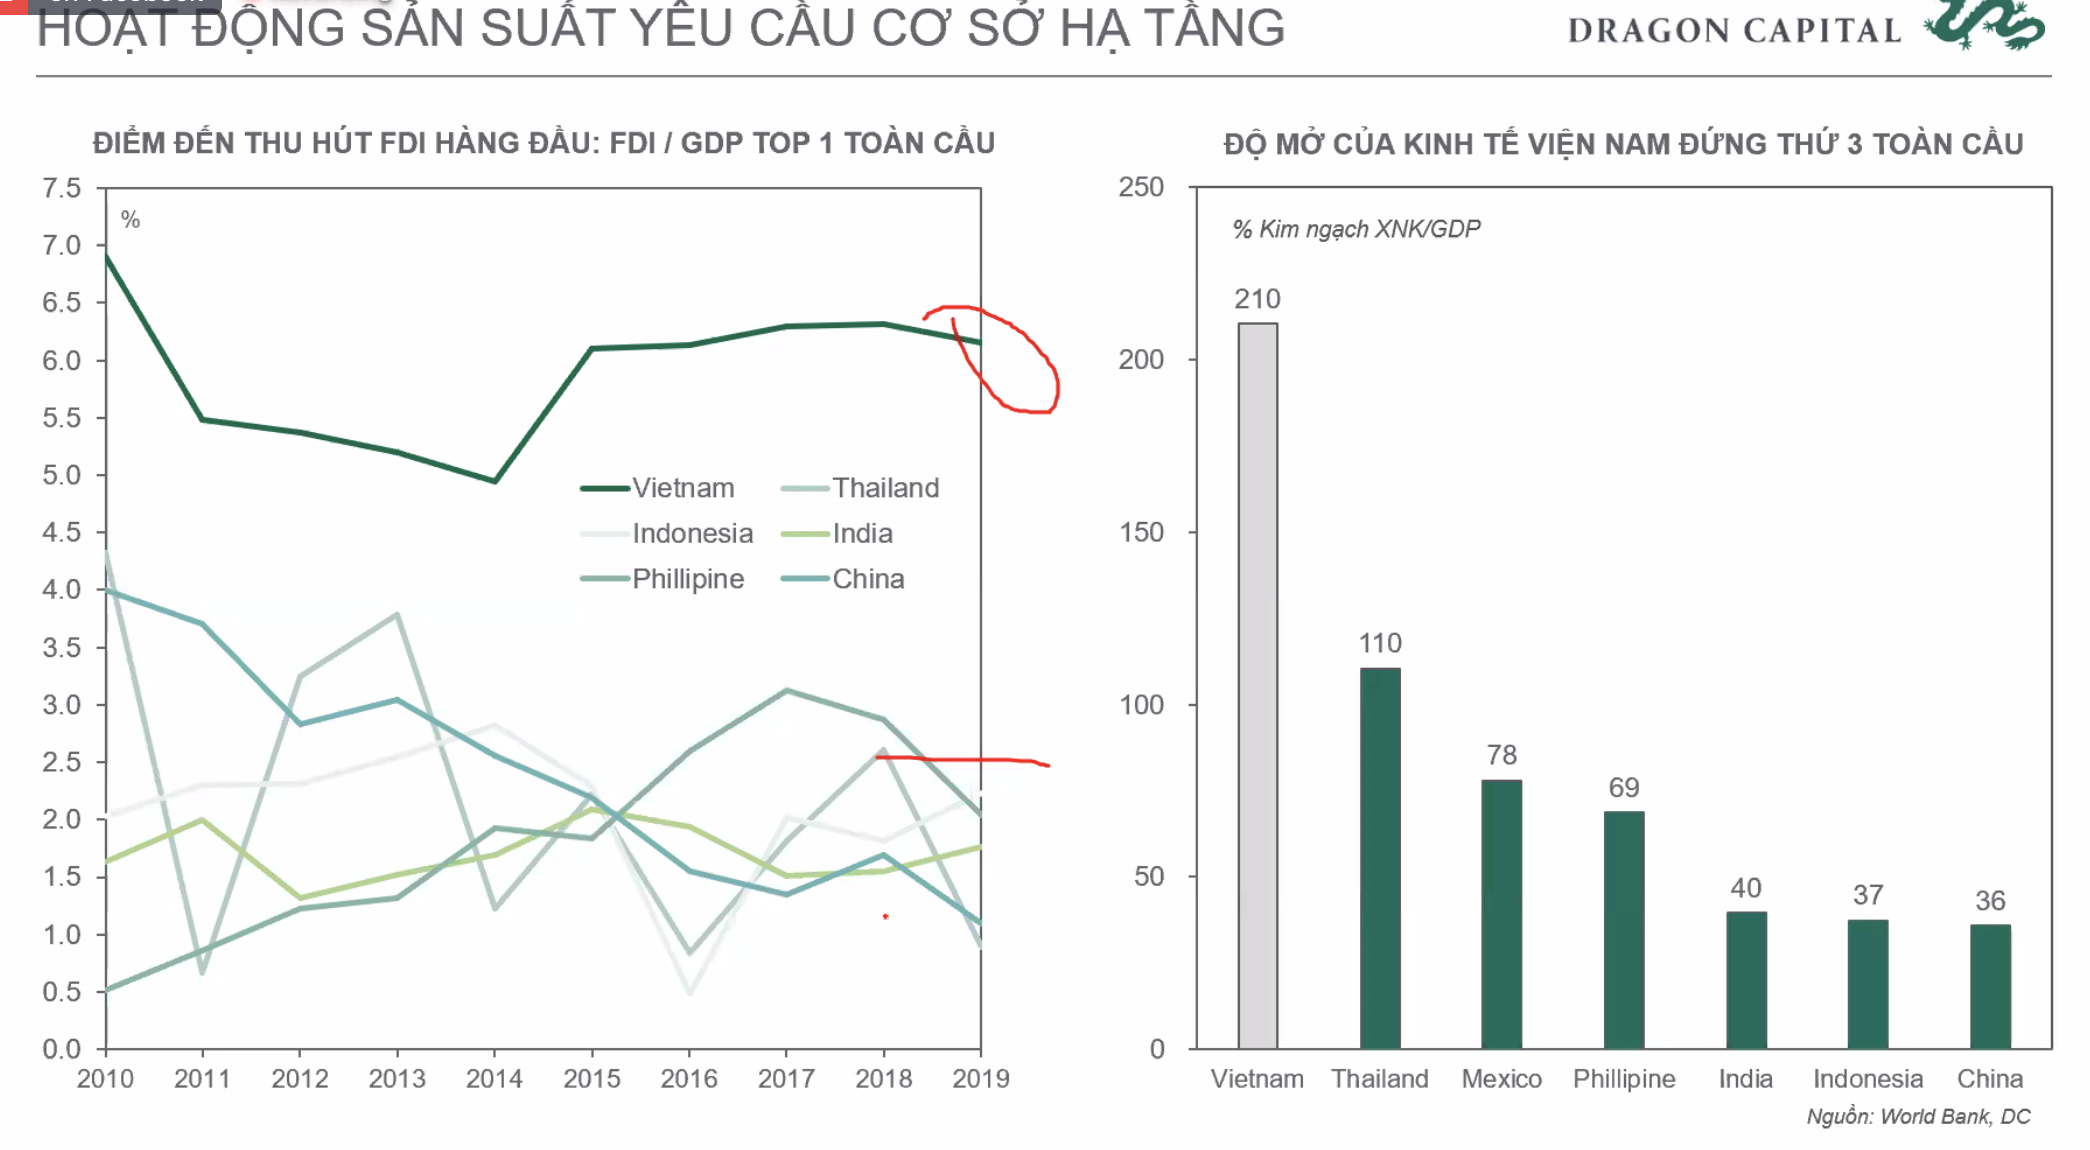 Phó Tổng giám đốc Đầu tư Dragon Capital: Khối ngoại không ảnh hưởng quá lớn tới TTCK Việt Nam như một thập kỷ trước, năm 2021 sẽ có thêm 30.000 tỷ cho vay margin - Ảnh 2.